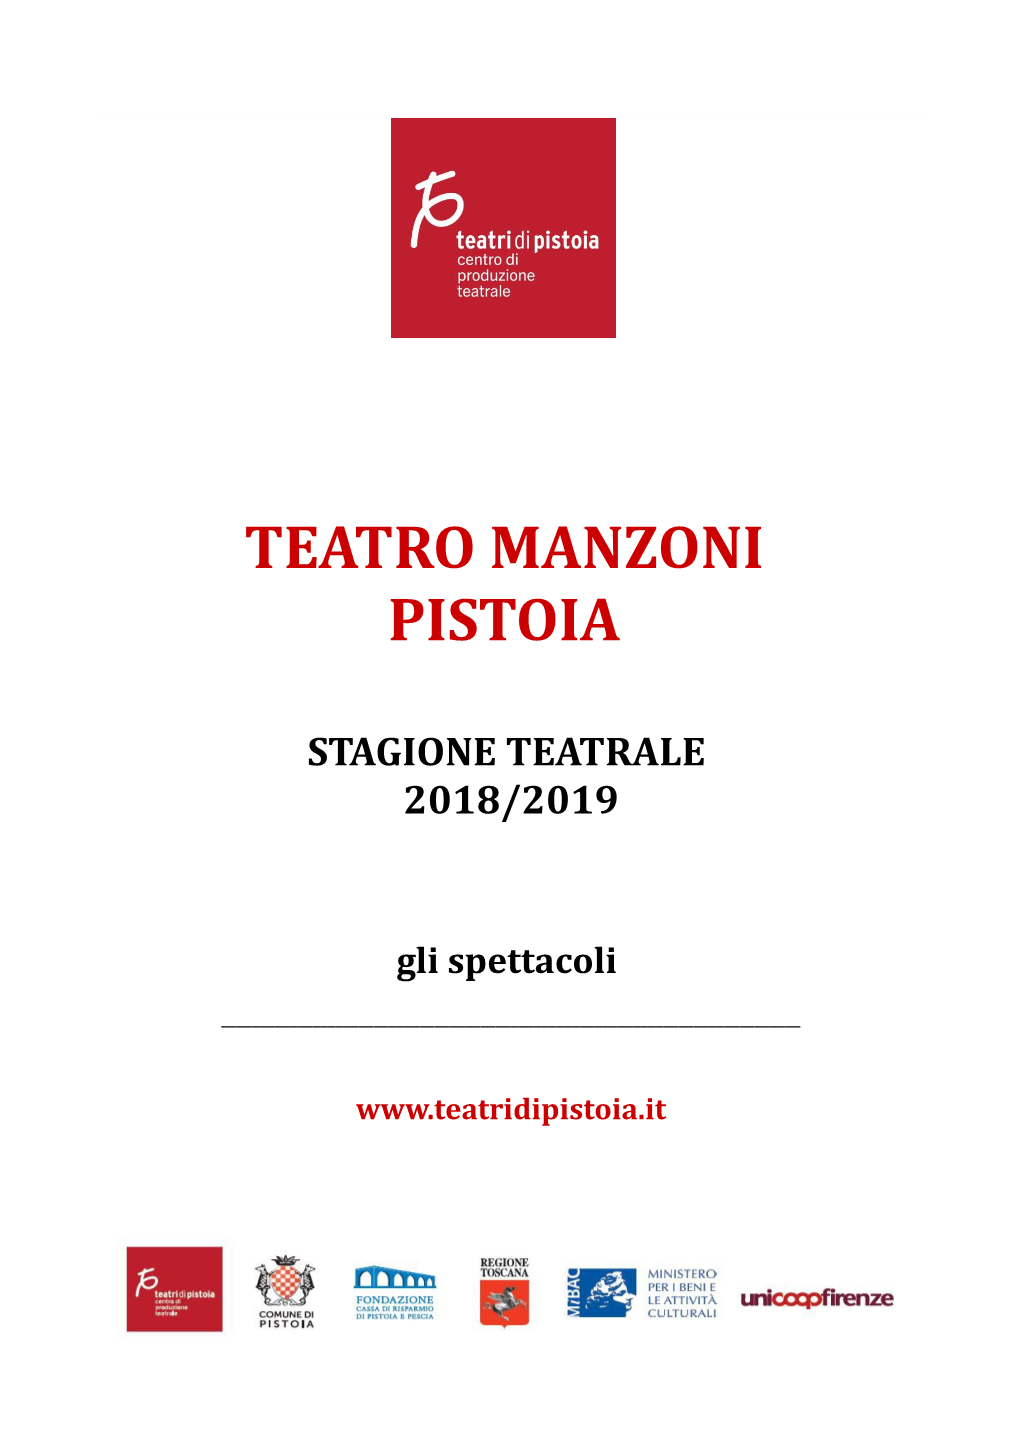 Teatro Manzoni Pistoia